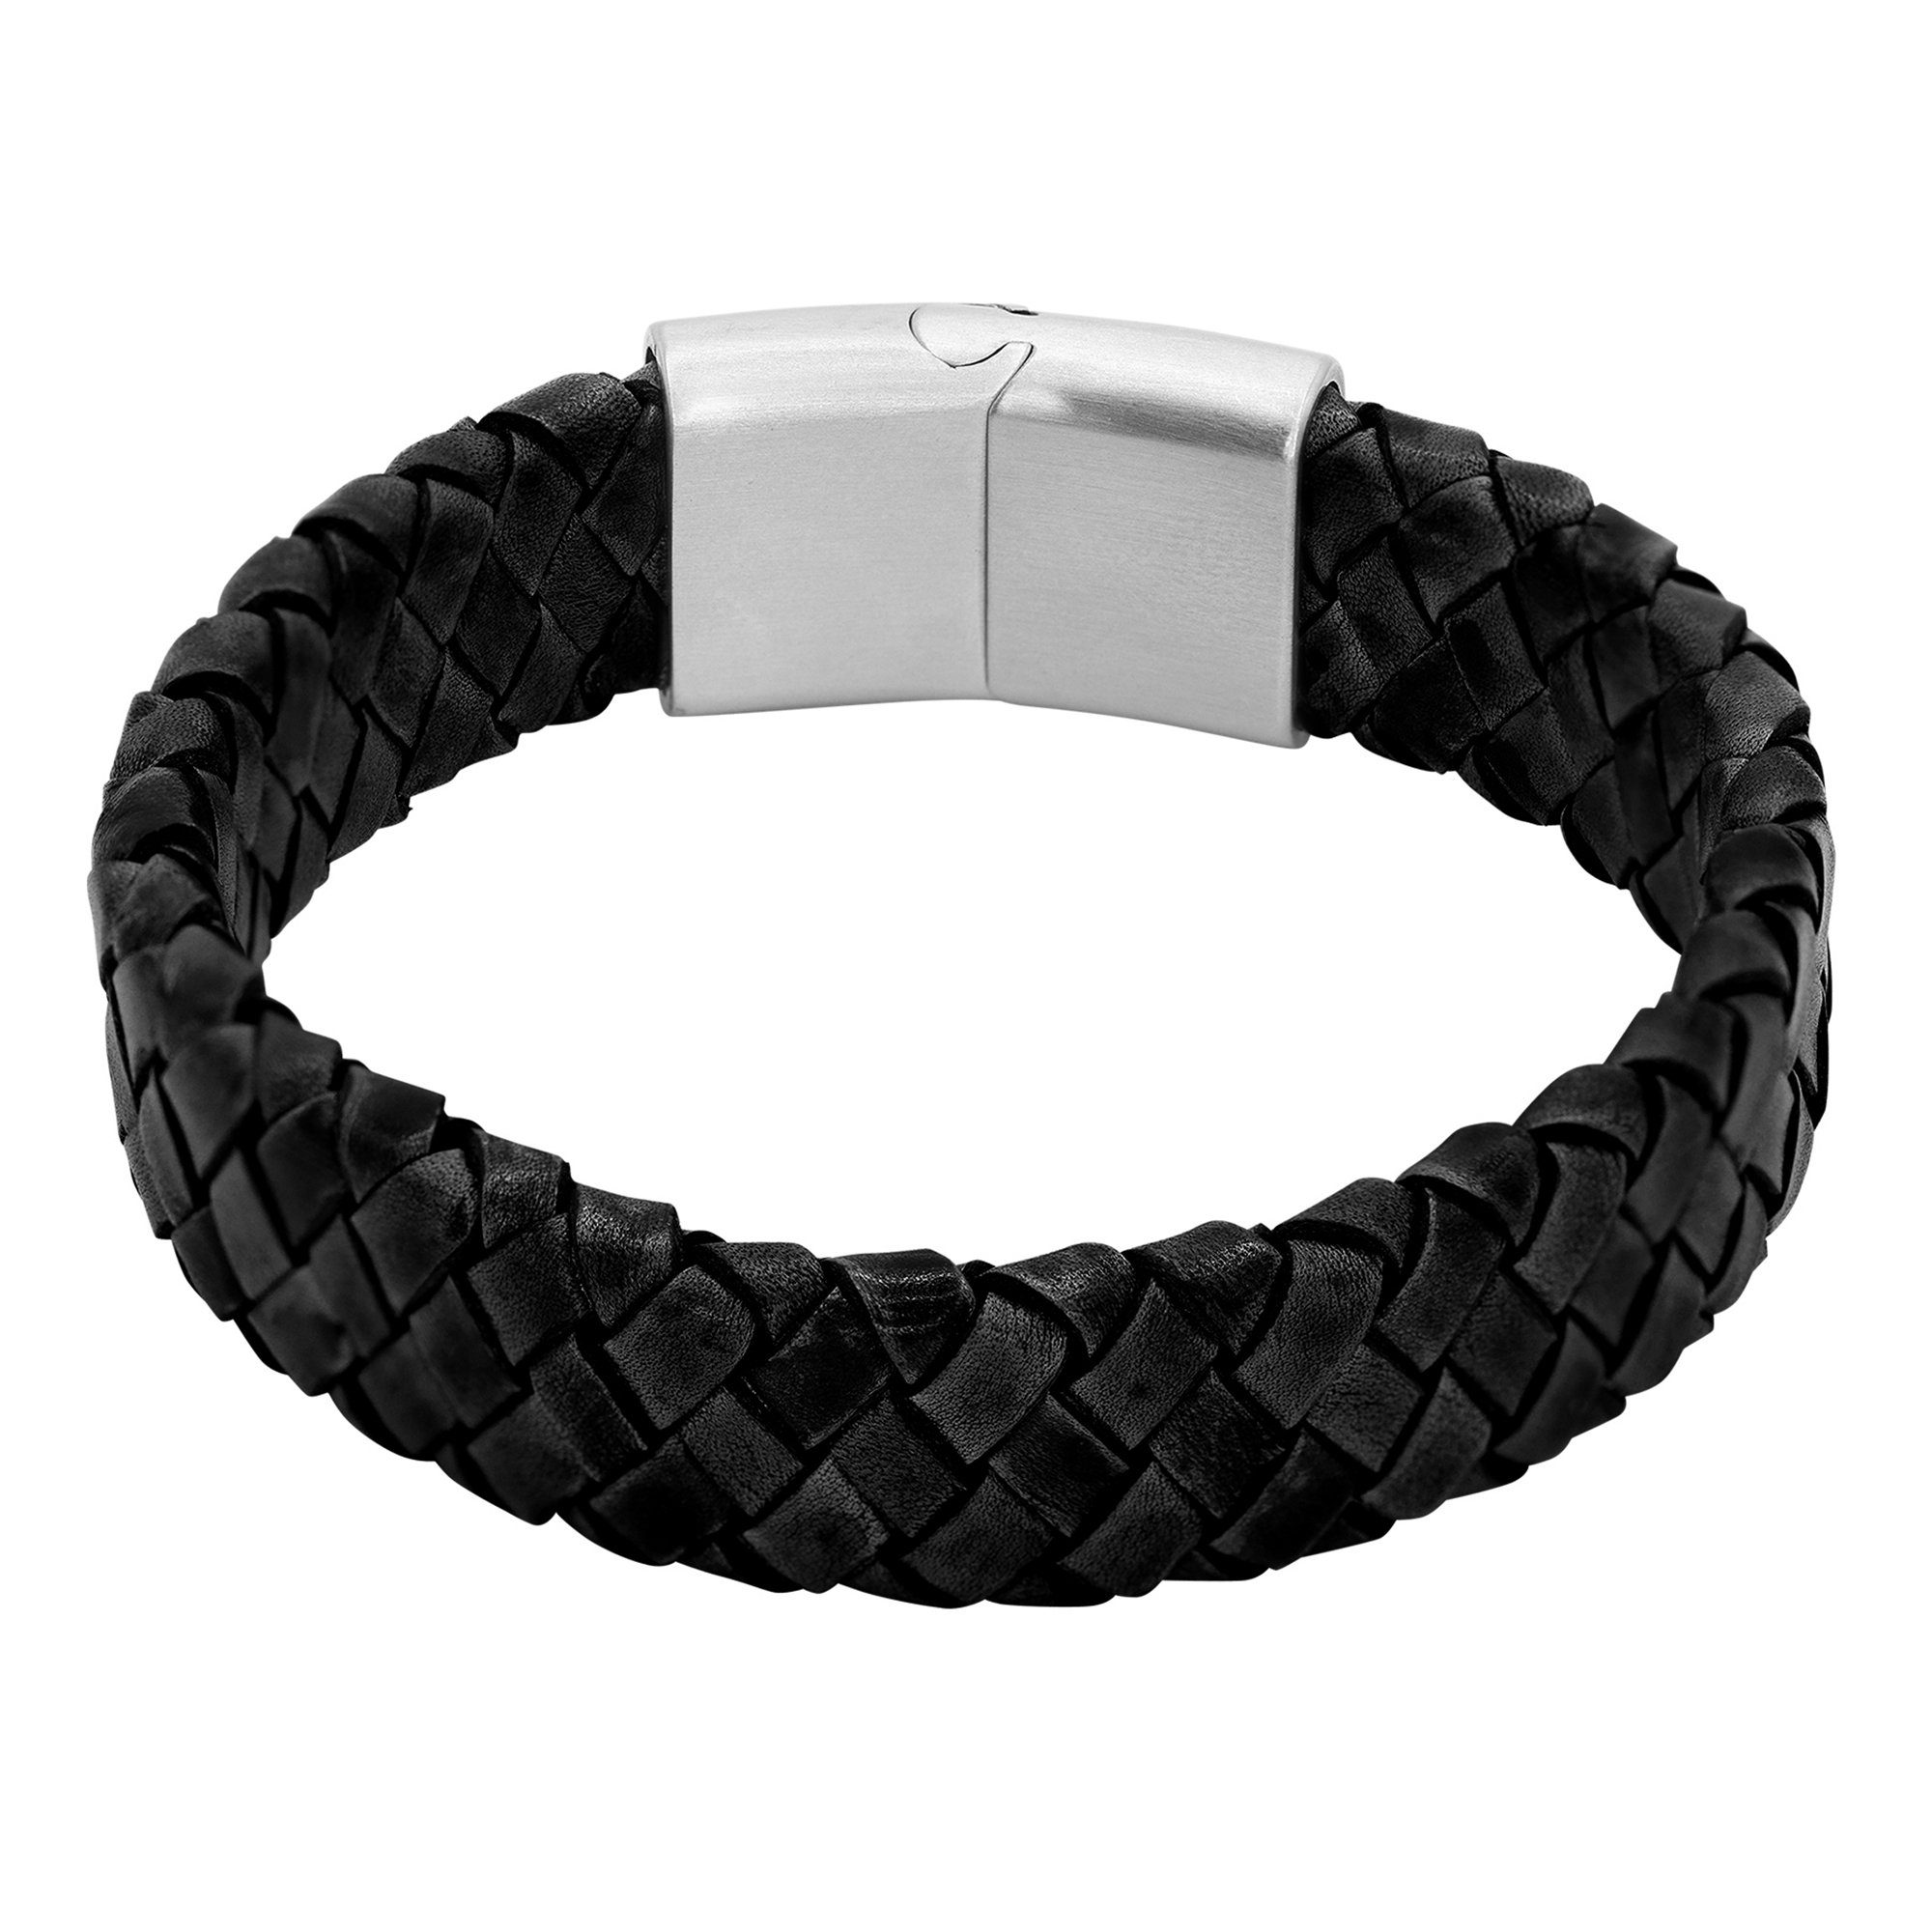 Keno Heideman Männerarmband, Armband Echtlederarmband, Lederarmband (Armband, inkl. Geschenkverpackung), schwarz Männerlederarmband